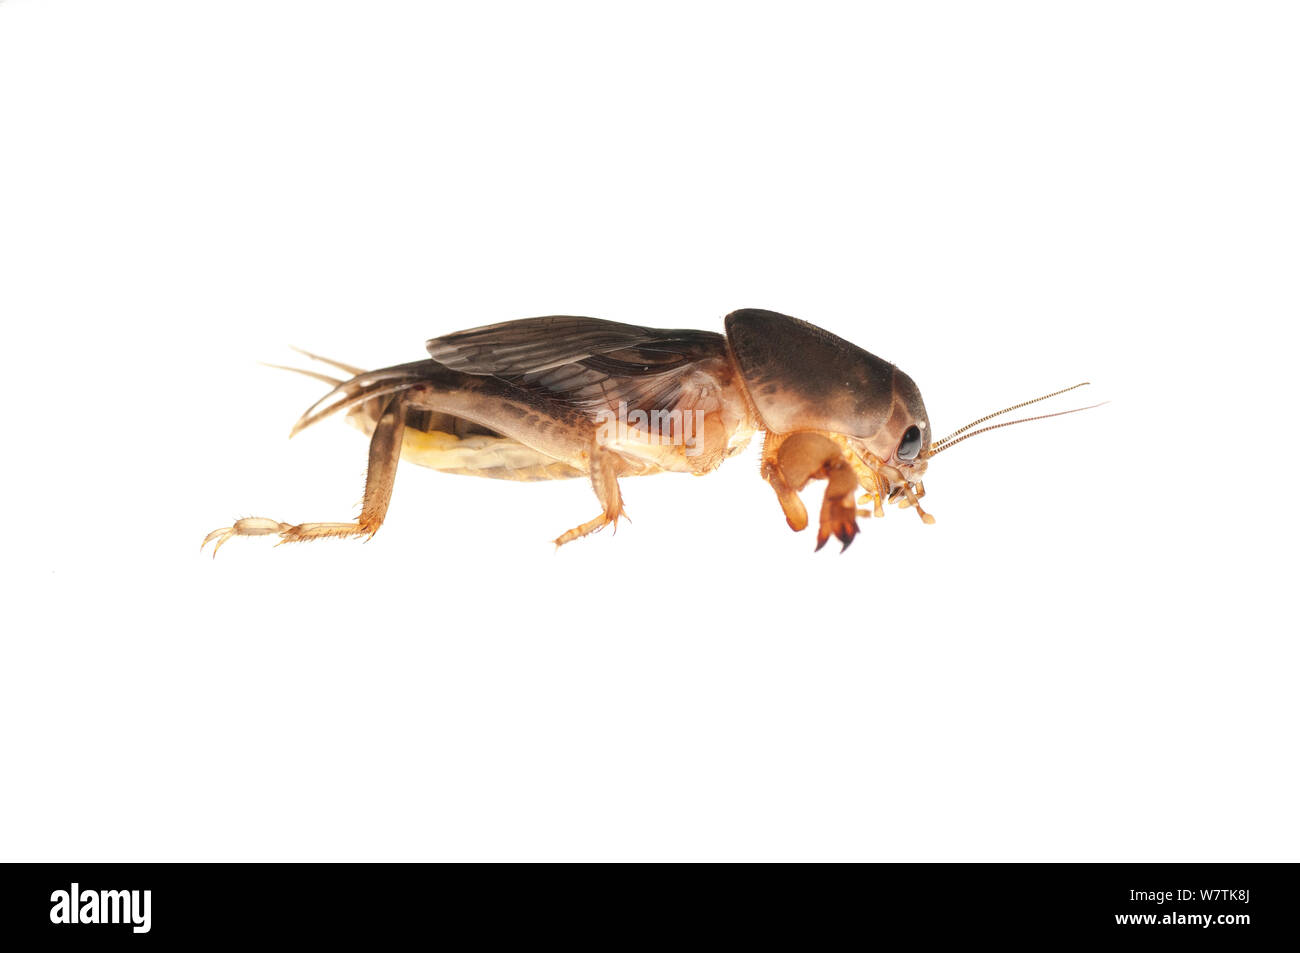 Mole cricket (Gryllotalpidae) Iwokrama, Guyana. Meetyourneighbours.net project Stock Photo